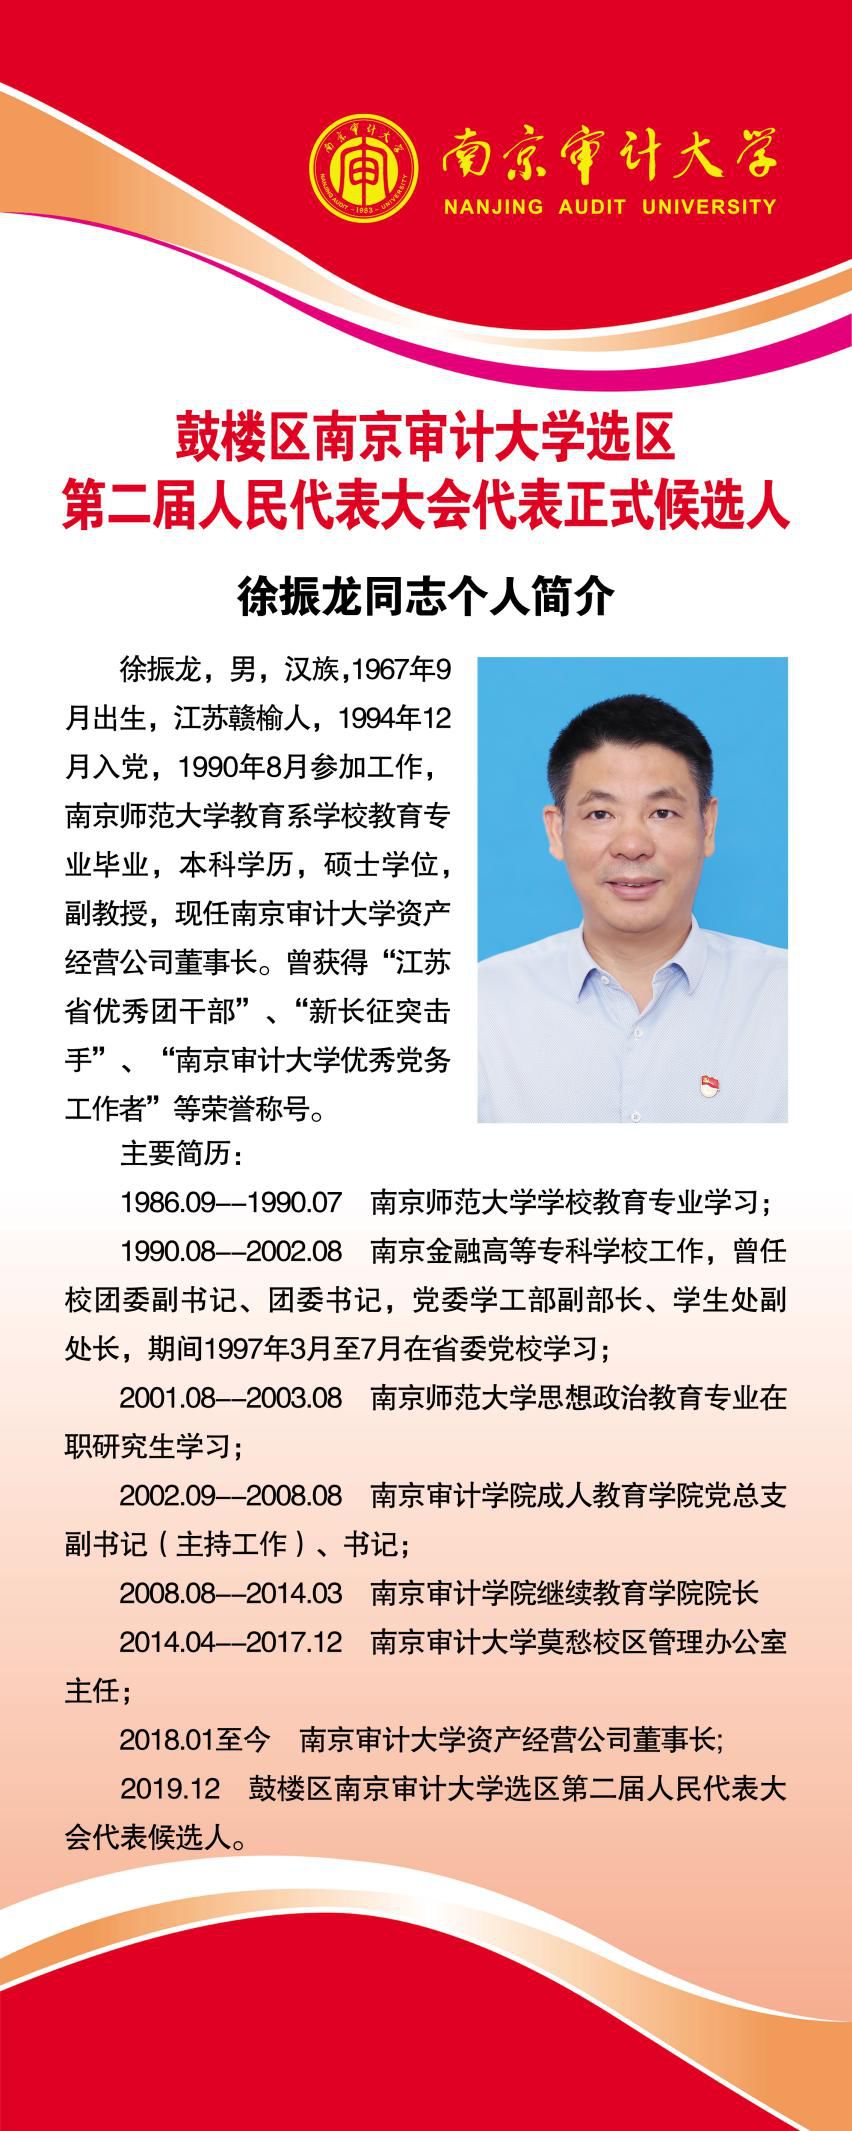 通知关于组织选民学习南京审计大学选区补选鼓楼区第二